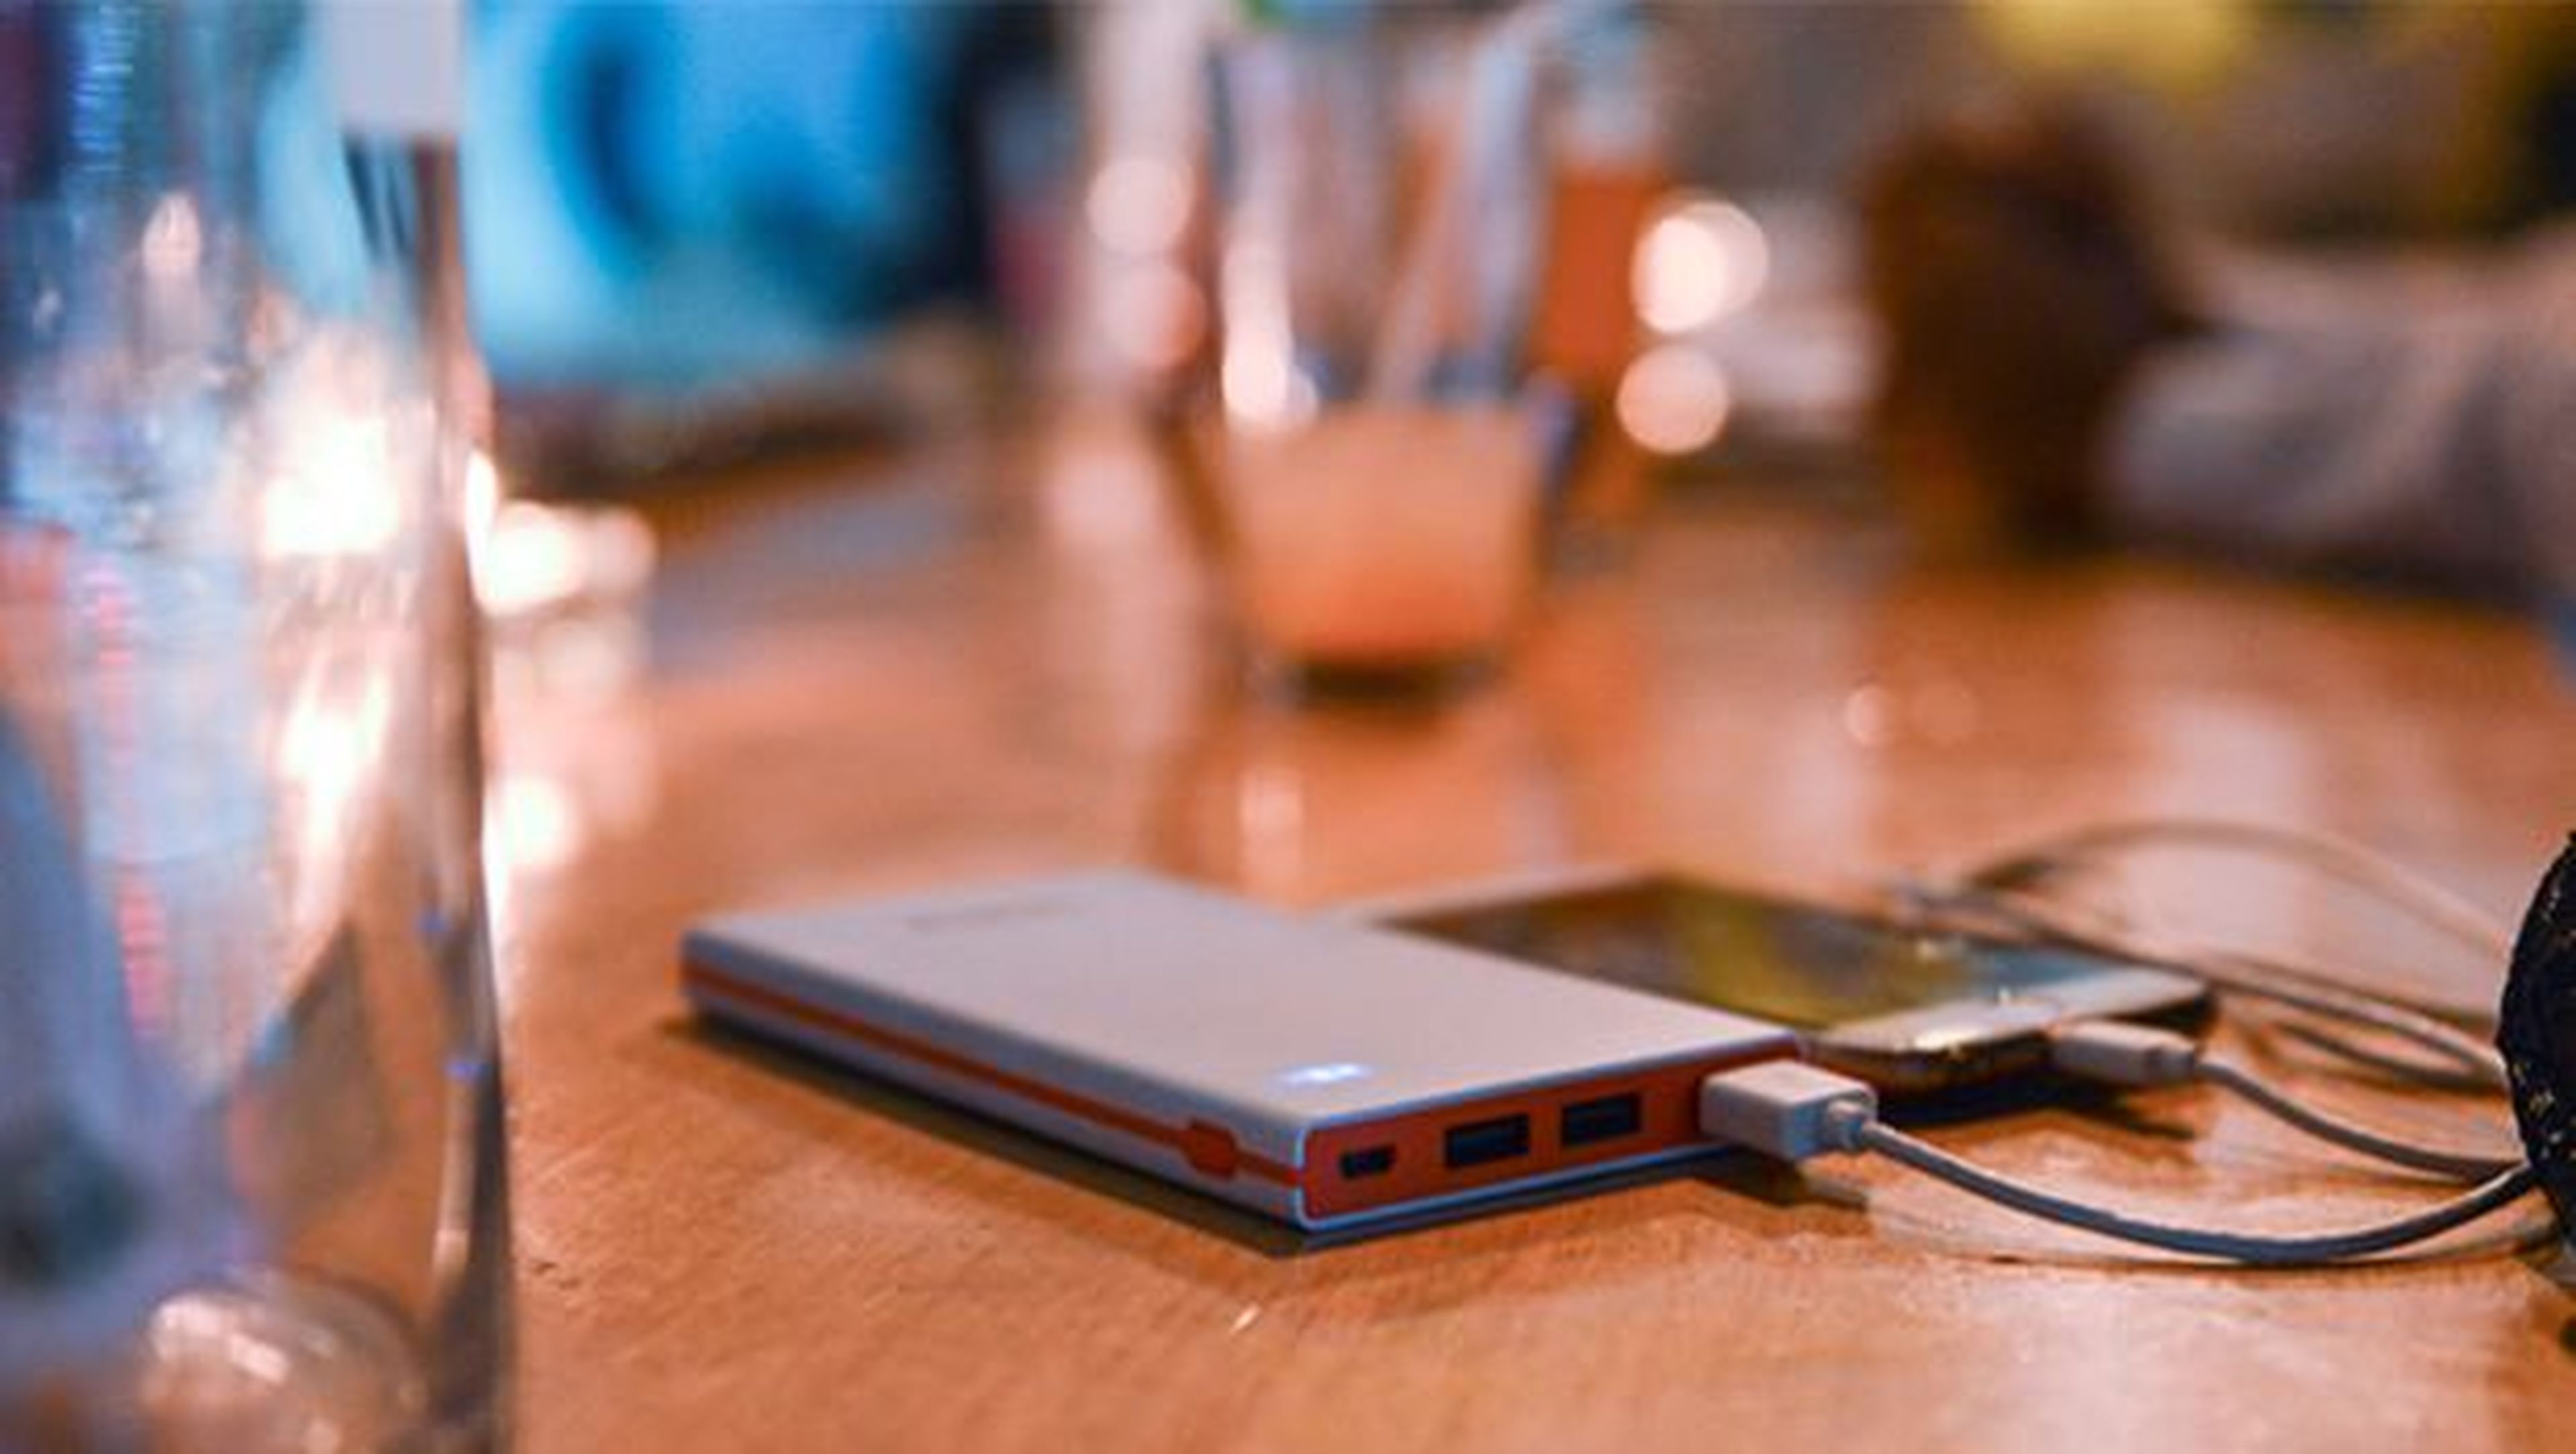 Los 15.000 mAh de esta batería portátil te permitirá recargar hasta 6 veces un iPhone 6S, 5 veces y media un Galaxy S6 o realizar dos cargas completas a un iPad Air 2